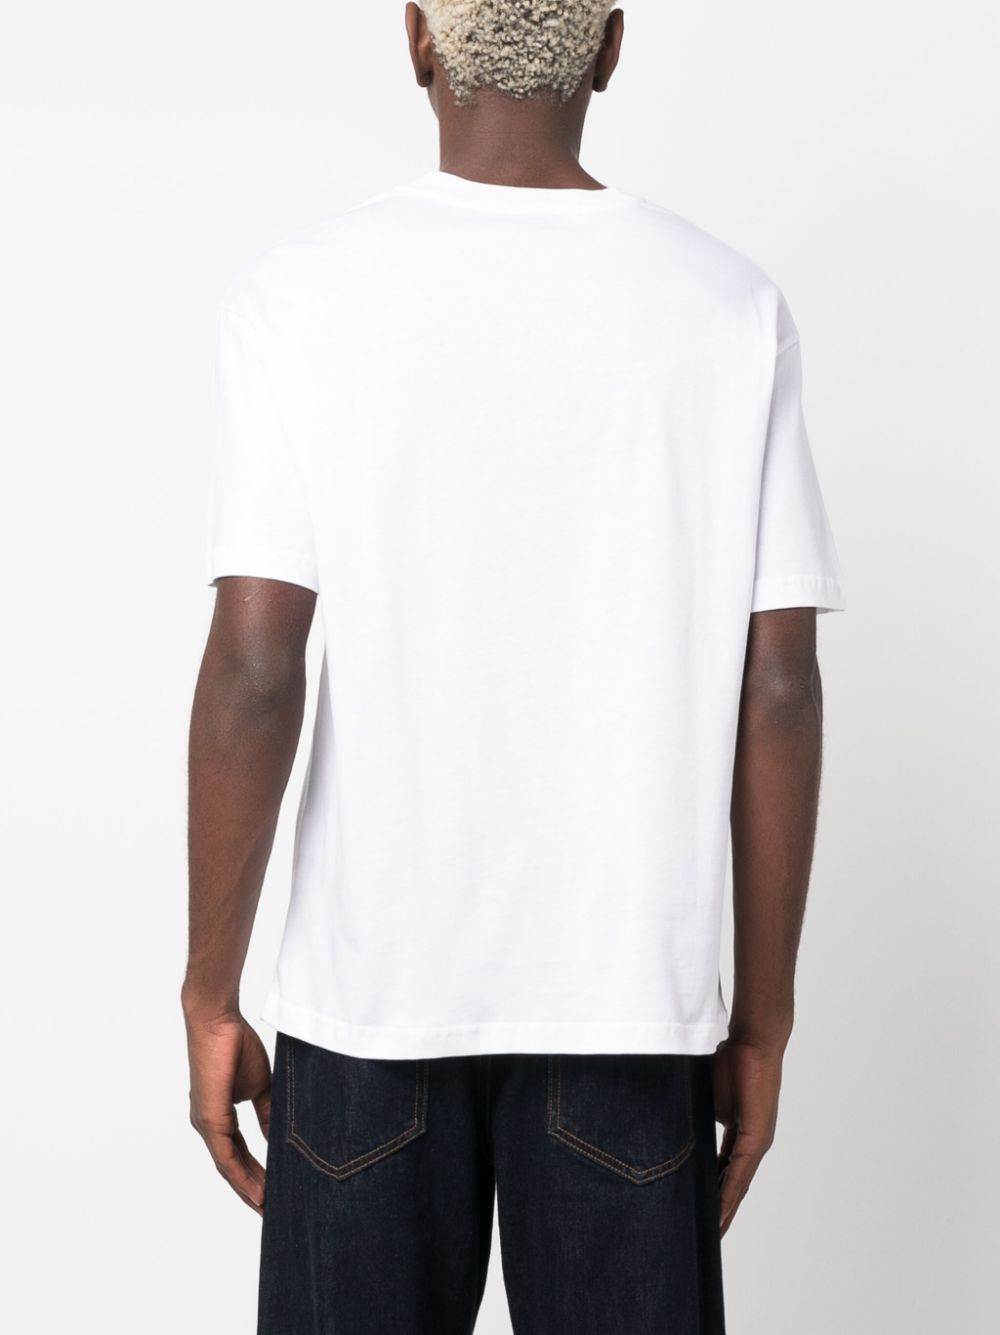 t-shirt bianca error 404